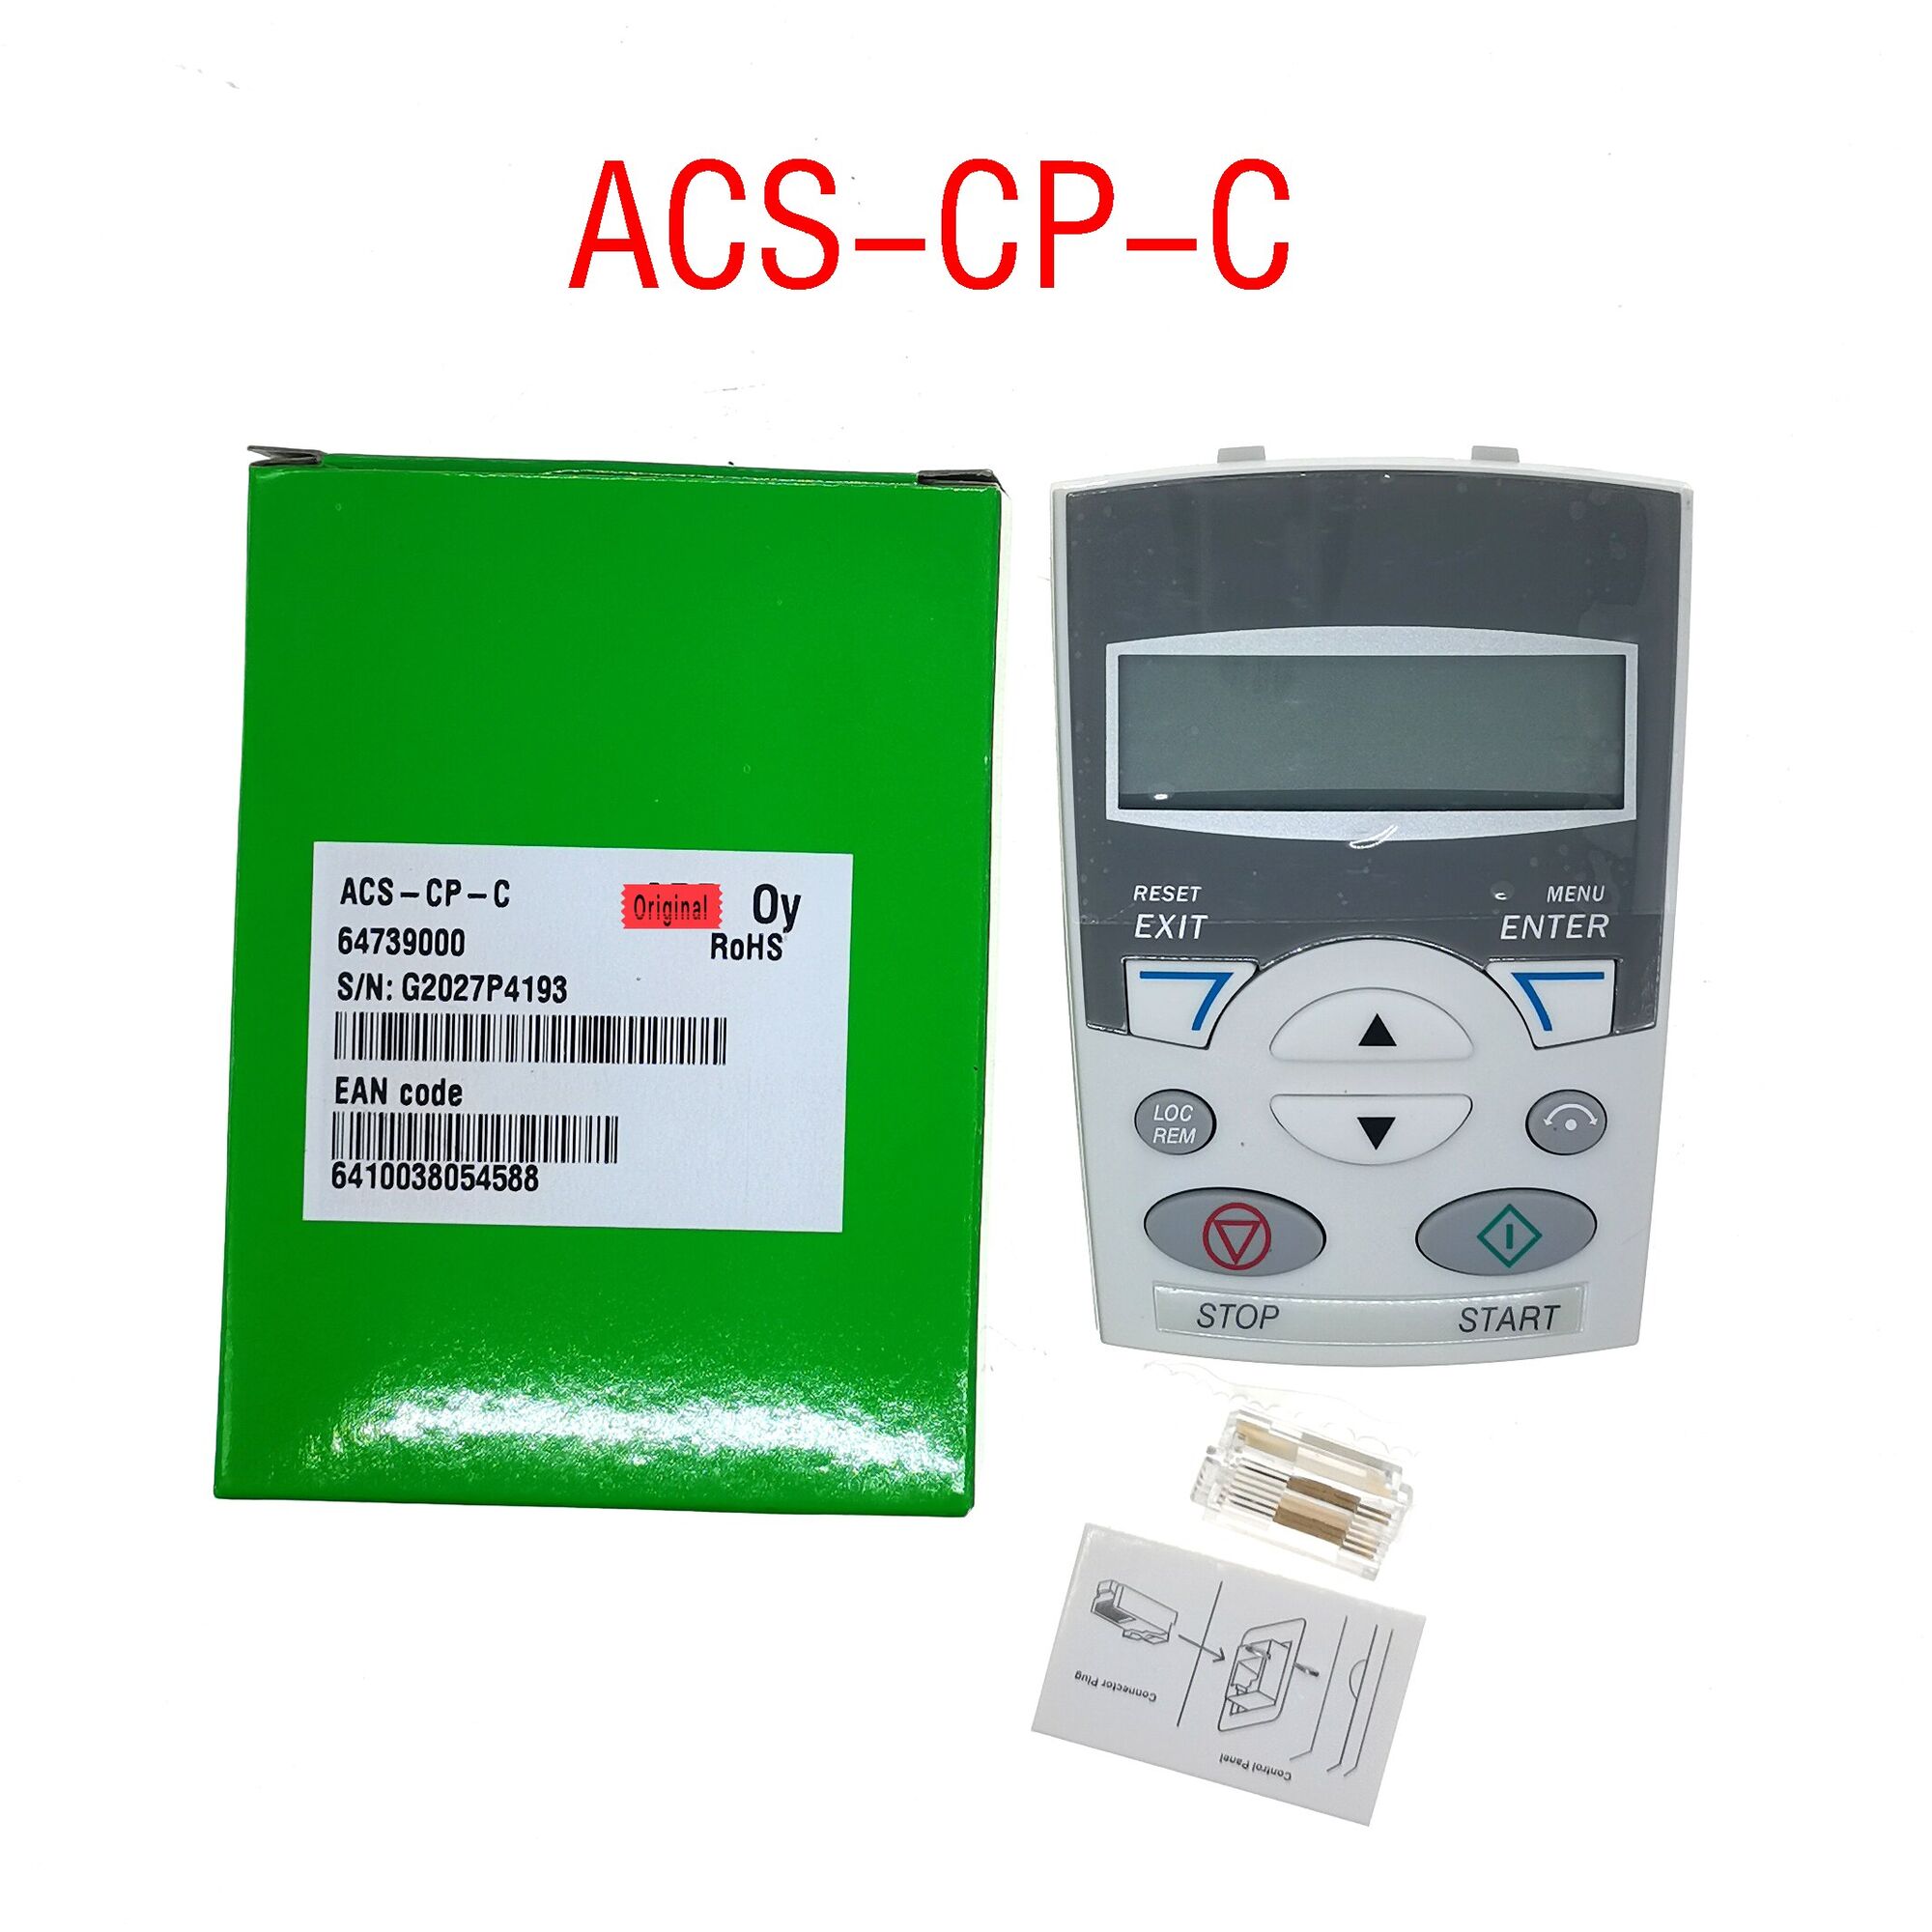 Съемная панель управления ACS-CP-C в комплекте